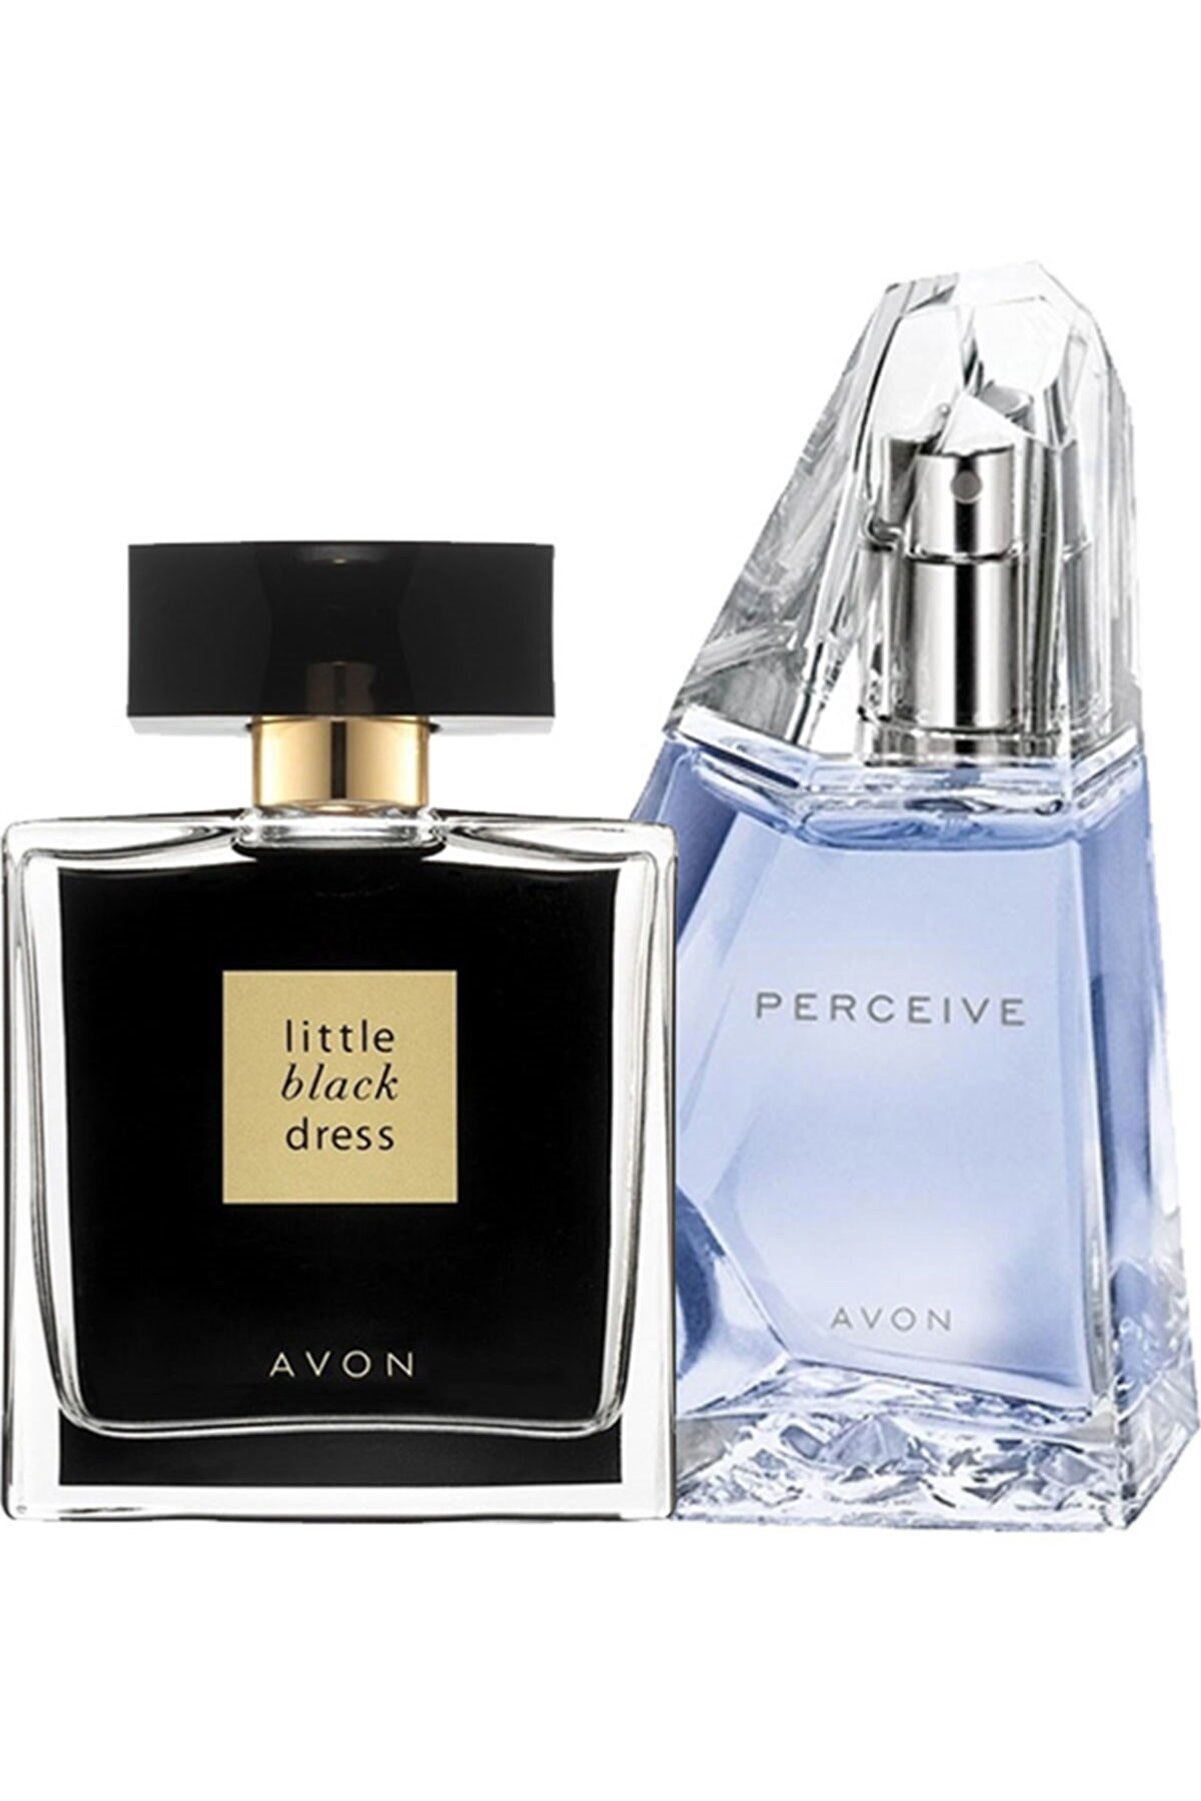 Avon Little Black Dress ve Perceive Kadın Parfüm Seti 5050000010023